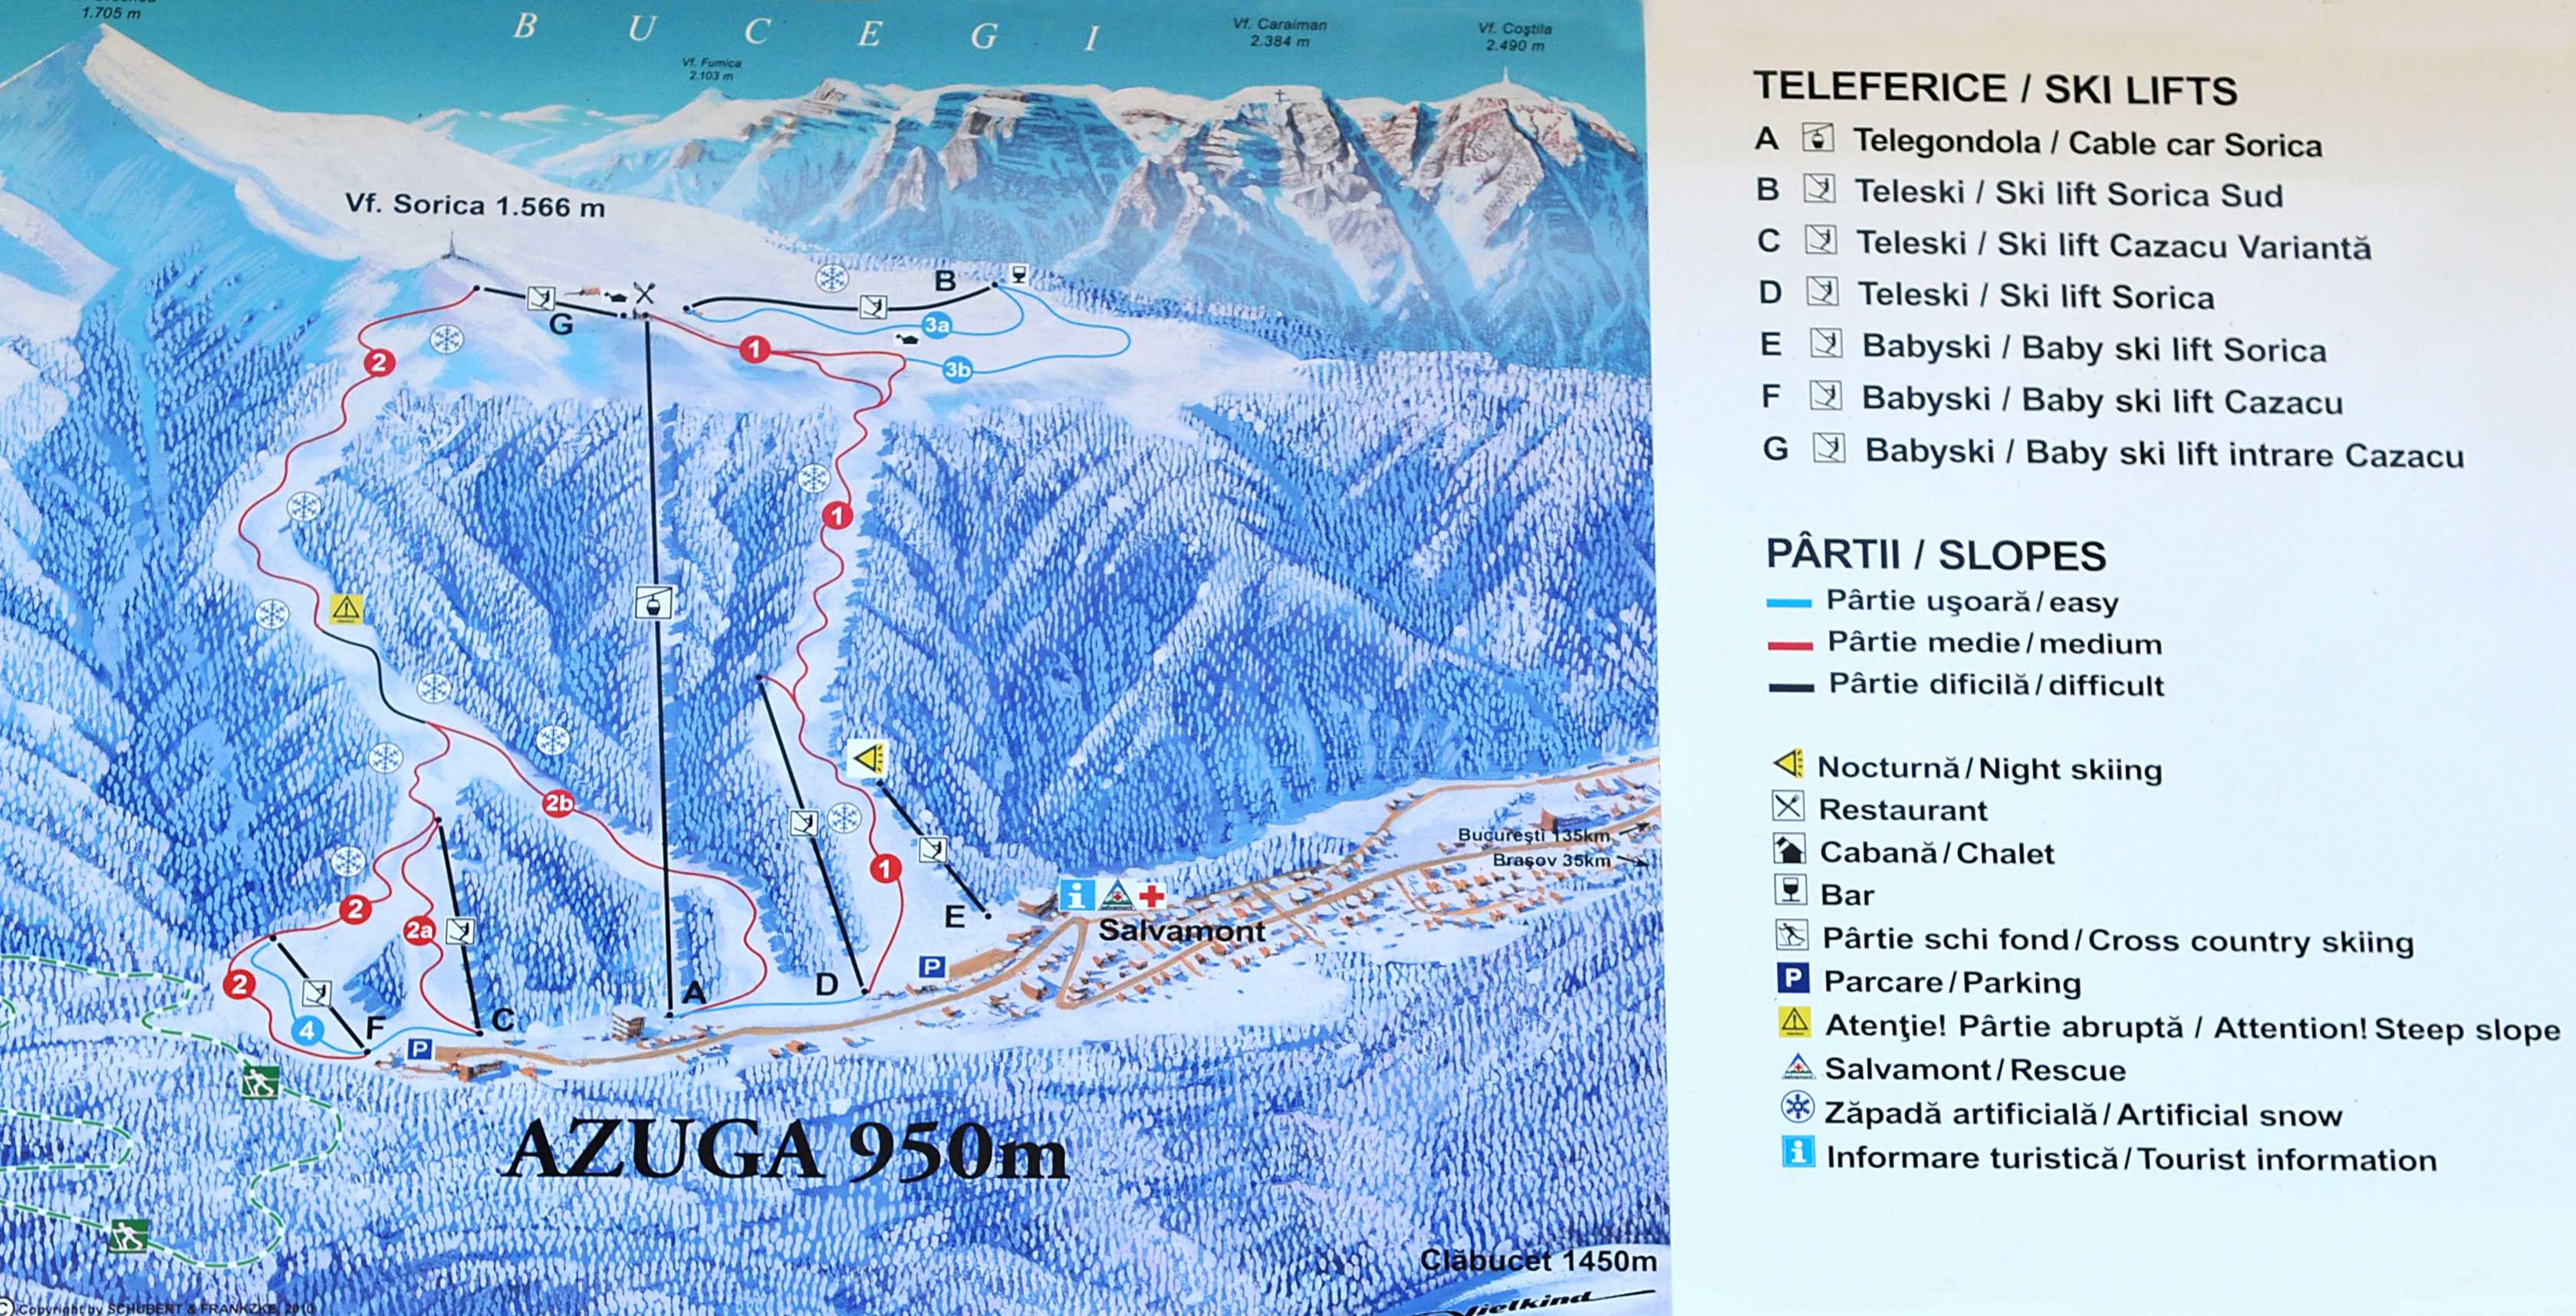 Teleferics and ski slopes in Azuga